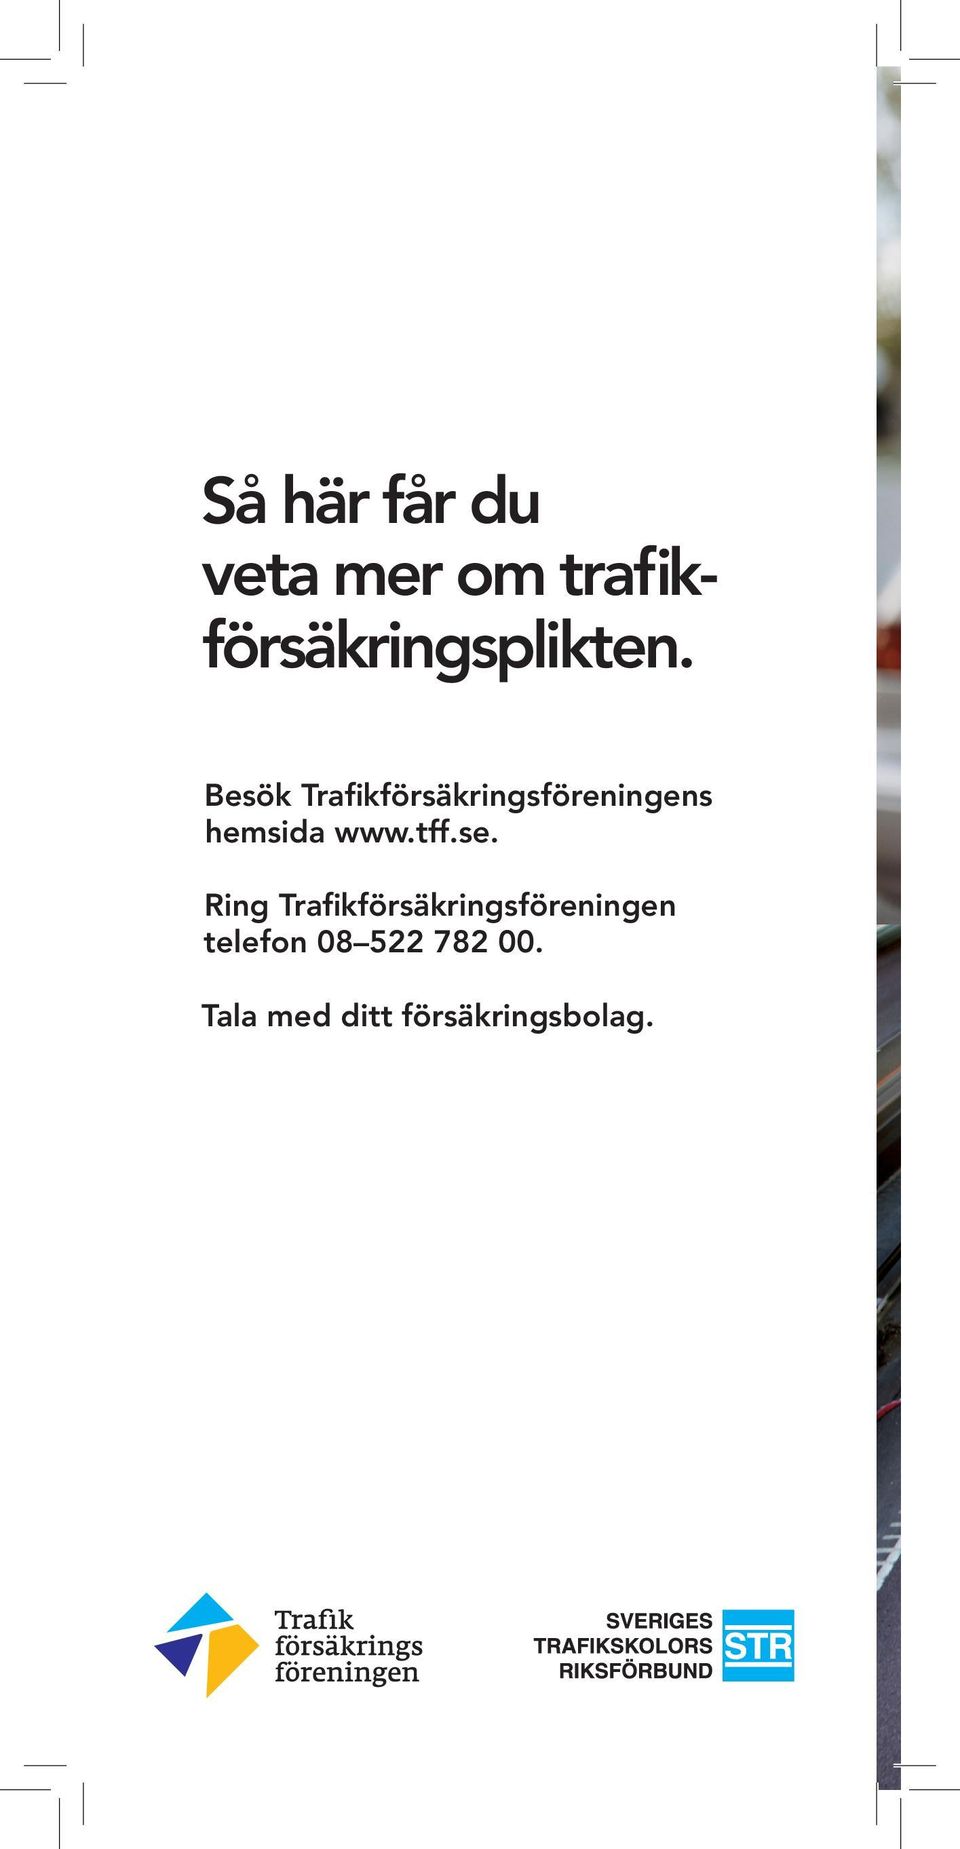 Besök Trafikförsäkringsföreningens hemsida www.